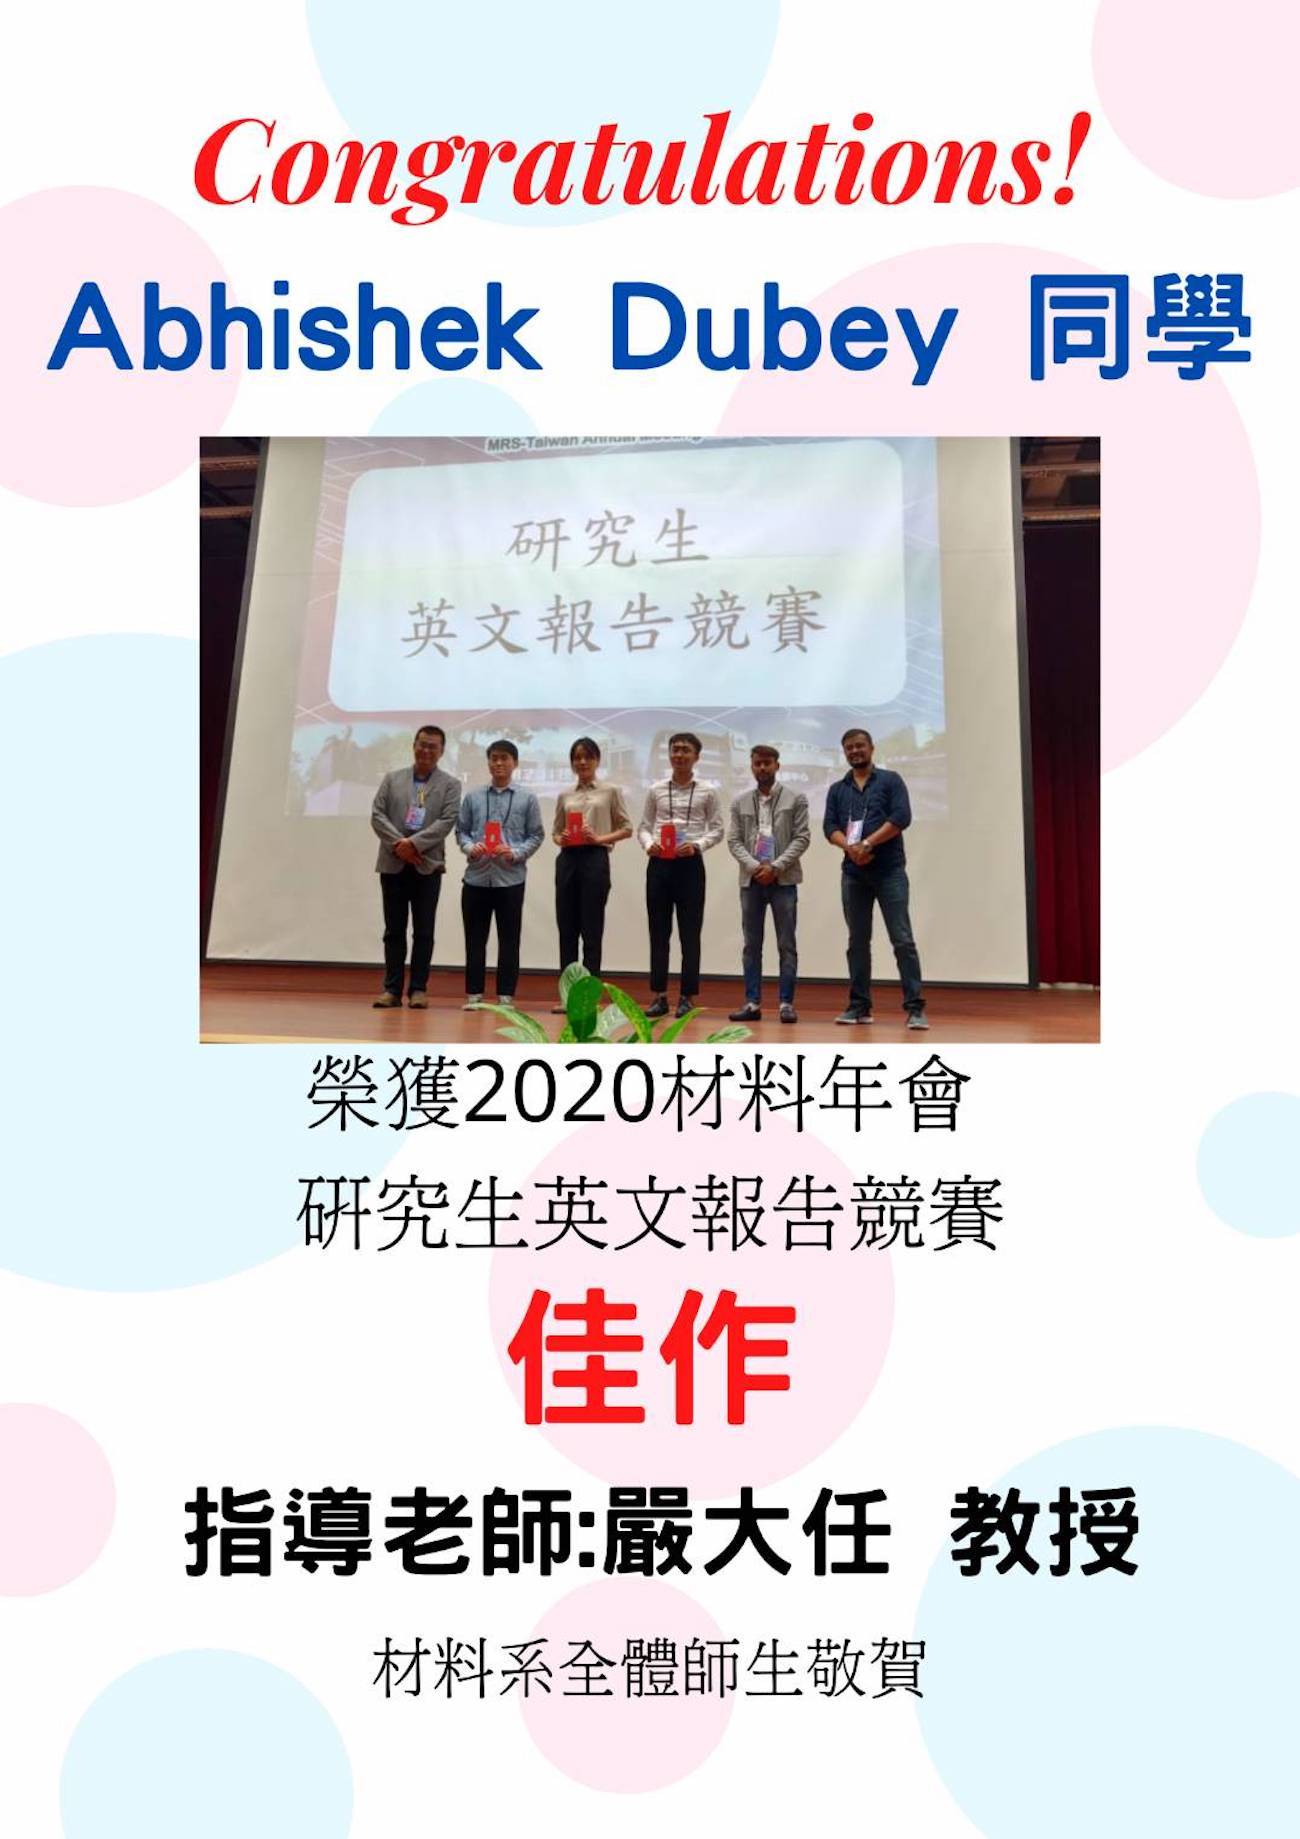 恭賀！Abhishek Dubey同學榮獲2020材料年會研究生英文報告競賽佳作